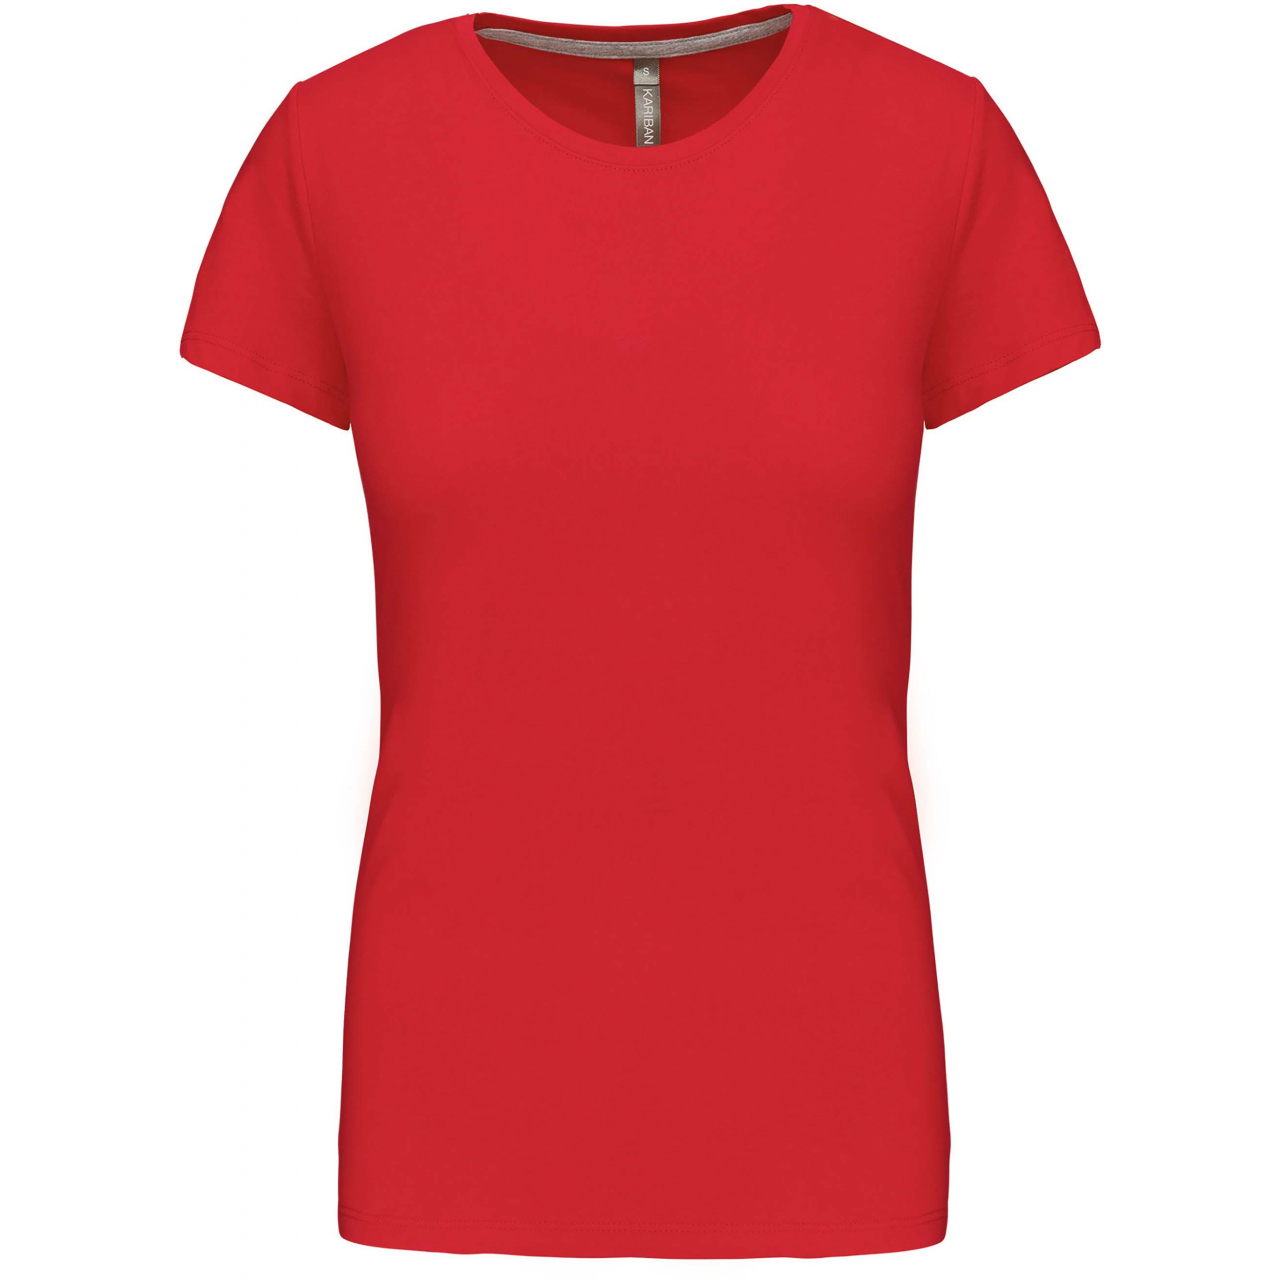 Dámské tričko Kariban s krátkým rukávem - červené, 3XL